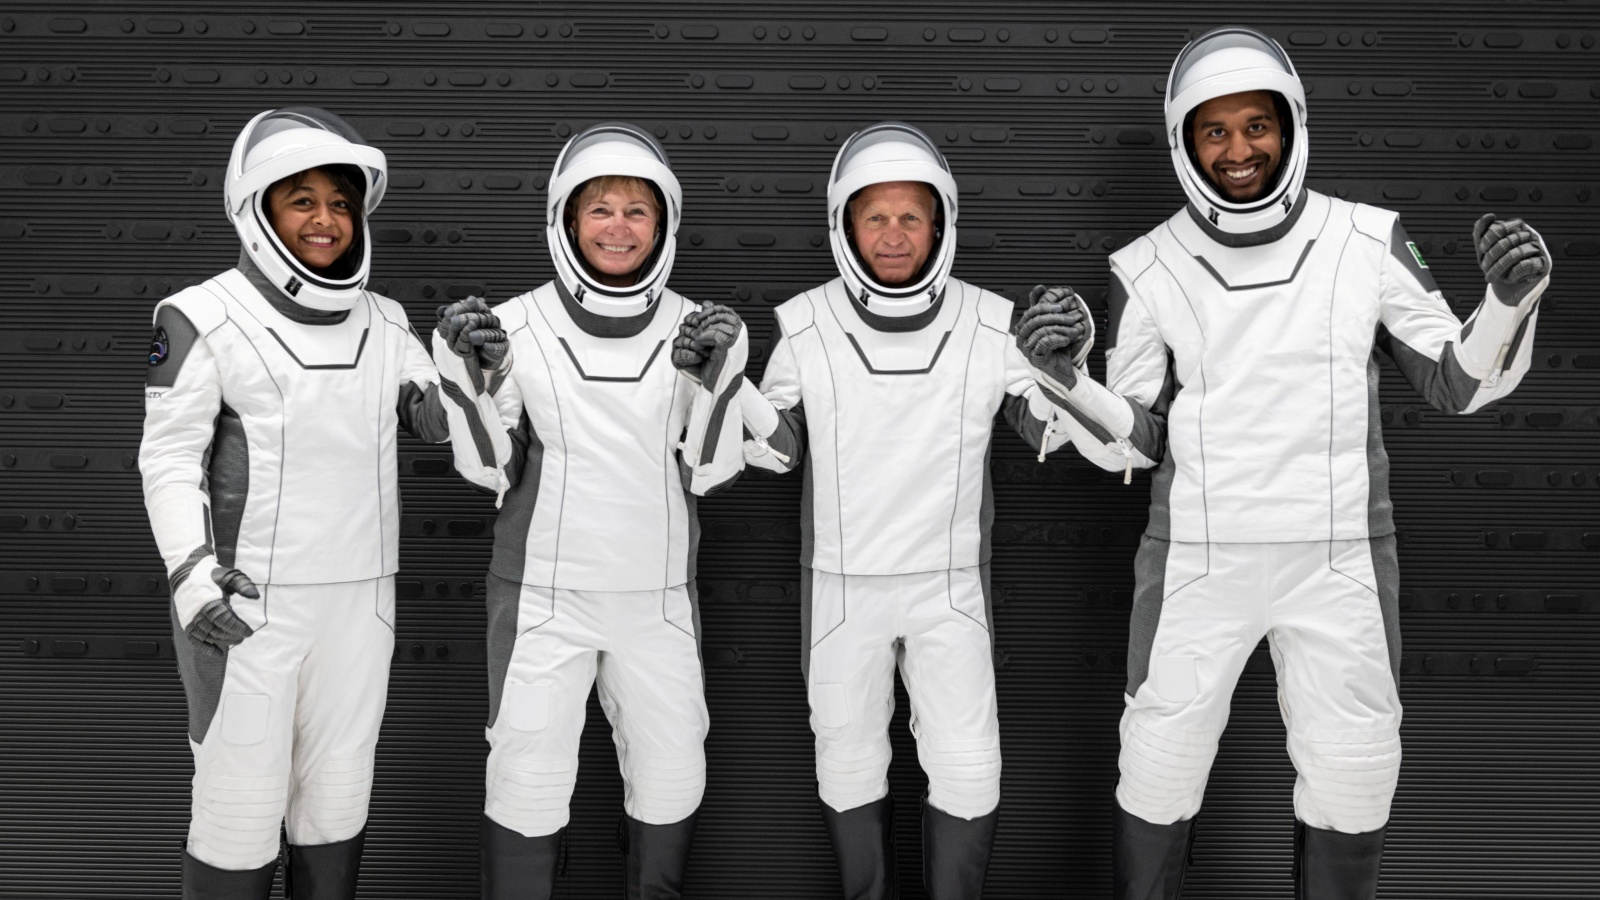 رواد الفضاء علي القرني، جون شيفنر، بيغي ويتسون، وريانة برناوي (من حساب الهيئة السعودية للفضاء الرسمي في تويتر)